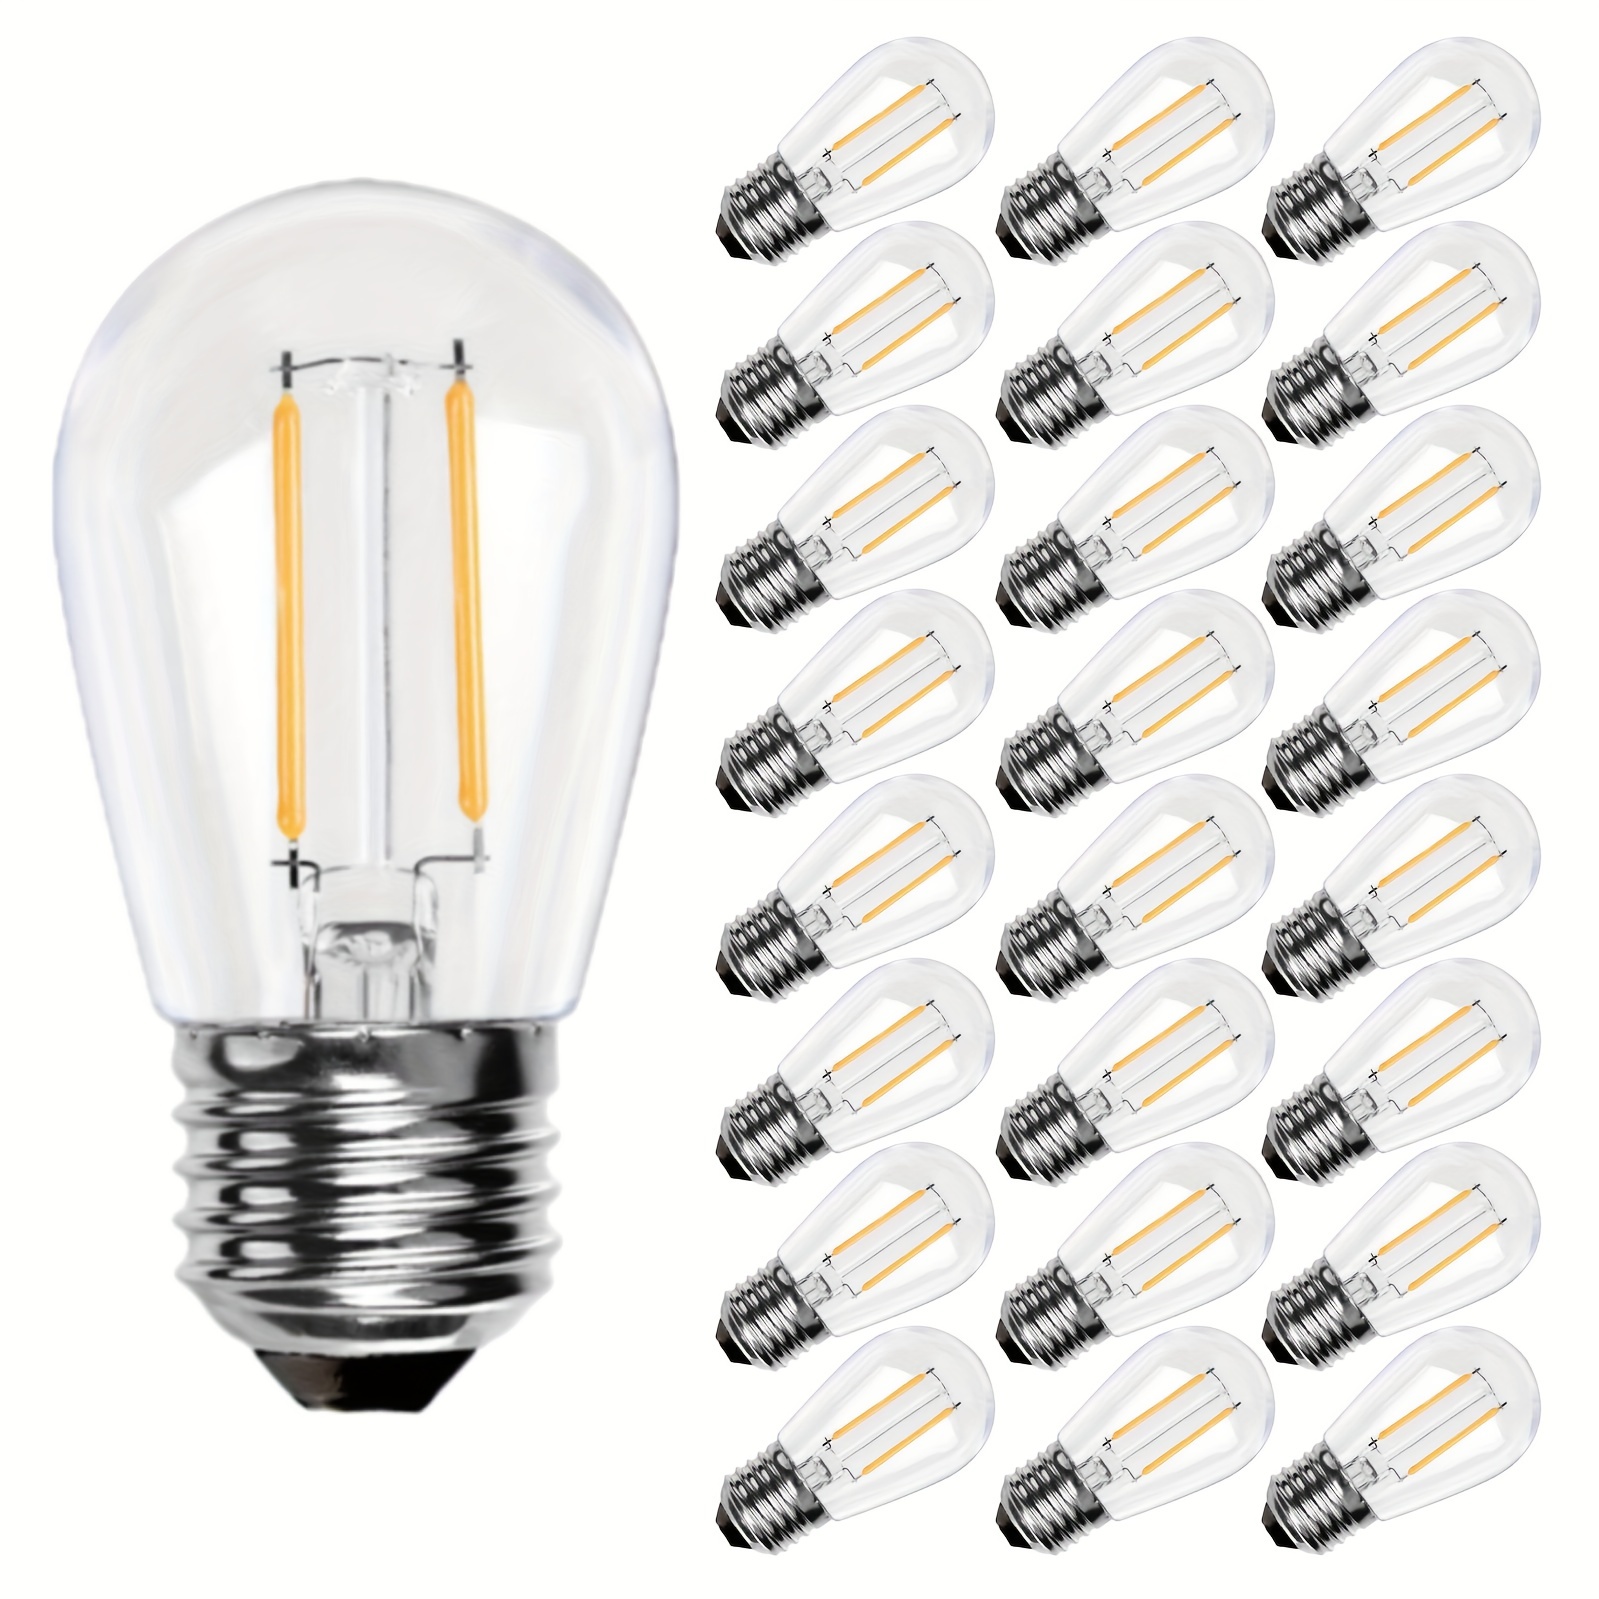 Lumières de fantaisie, emballage de 25 ampoules à DEL de rechange